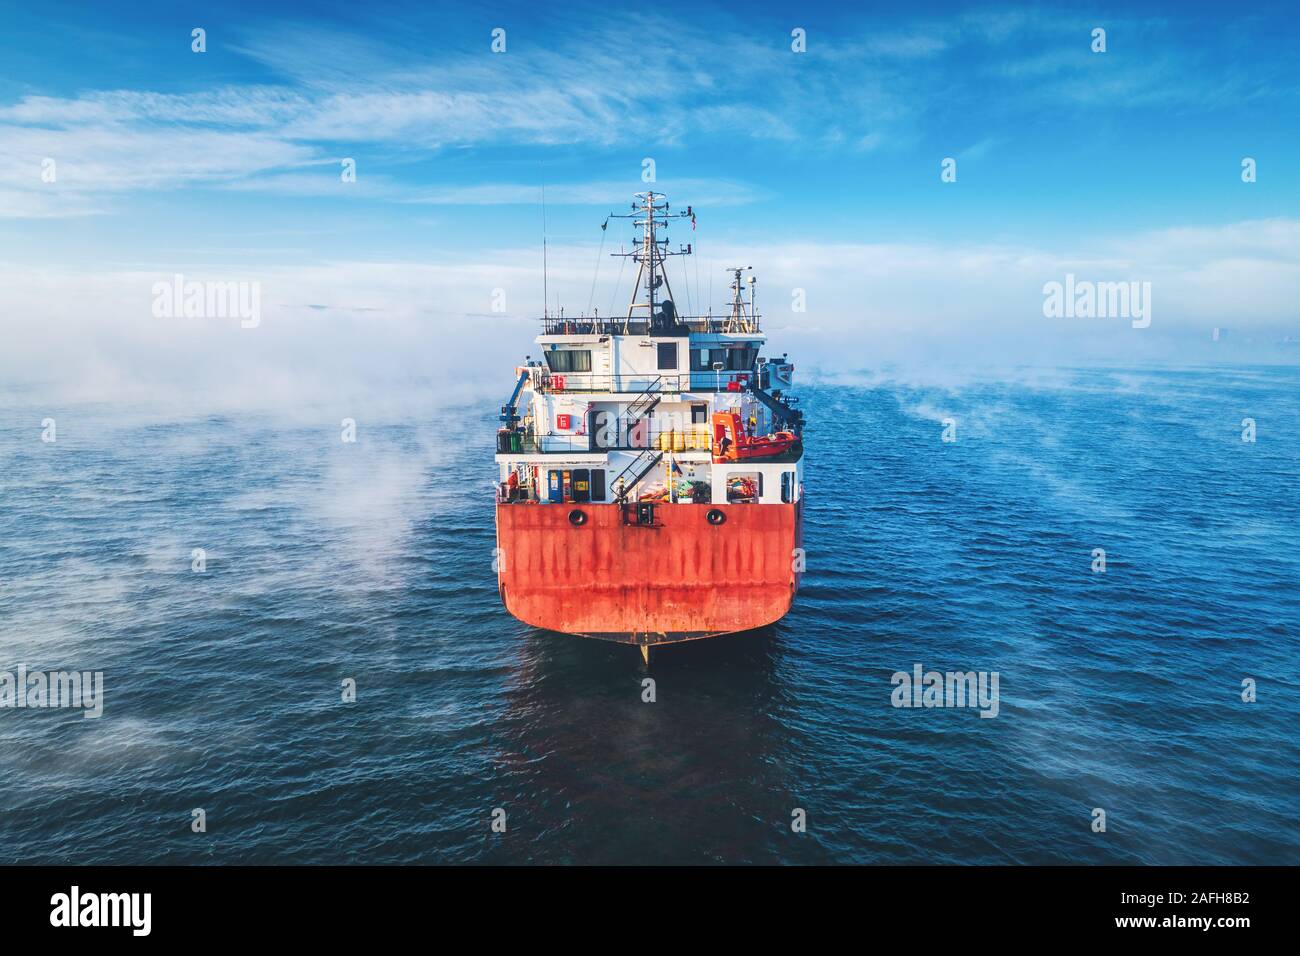 Luftaufnahme von Cargo Container Schiff im Meer Nebel, Kran Schiff arbeiten für die Lieferung von Containern. Stockfoto